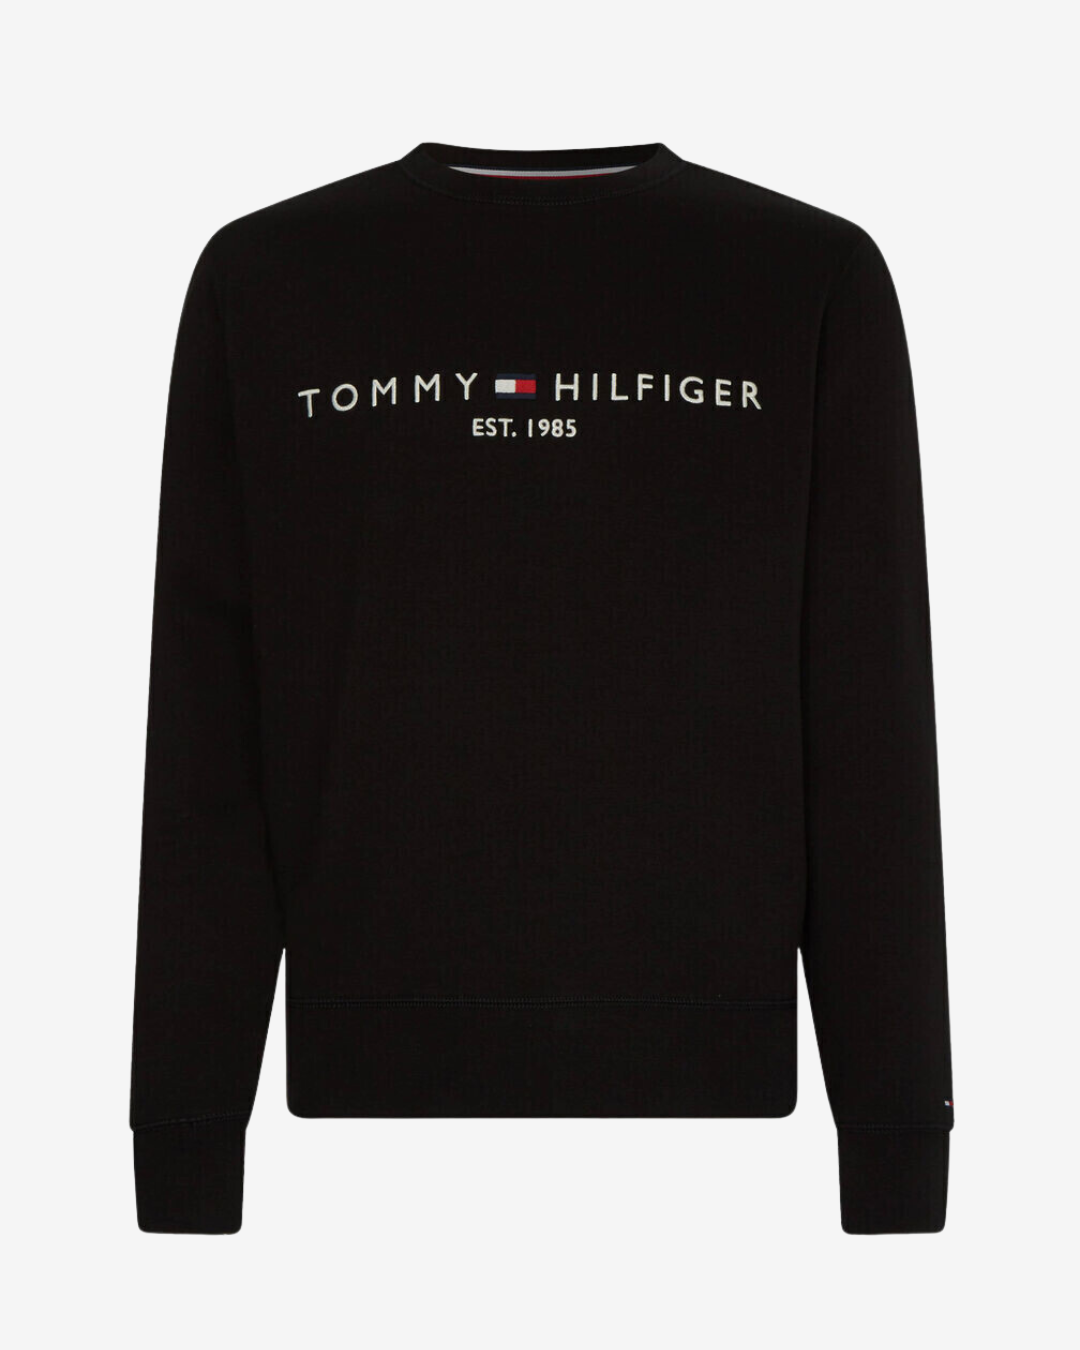 Tommy Hilfiger Klassisk logo sweatshirt - Sort - Str. XL - Modish.dk